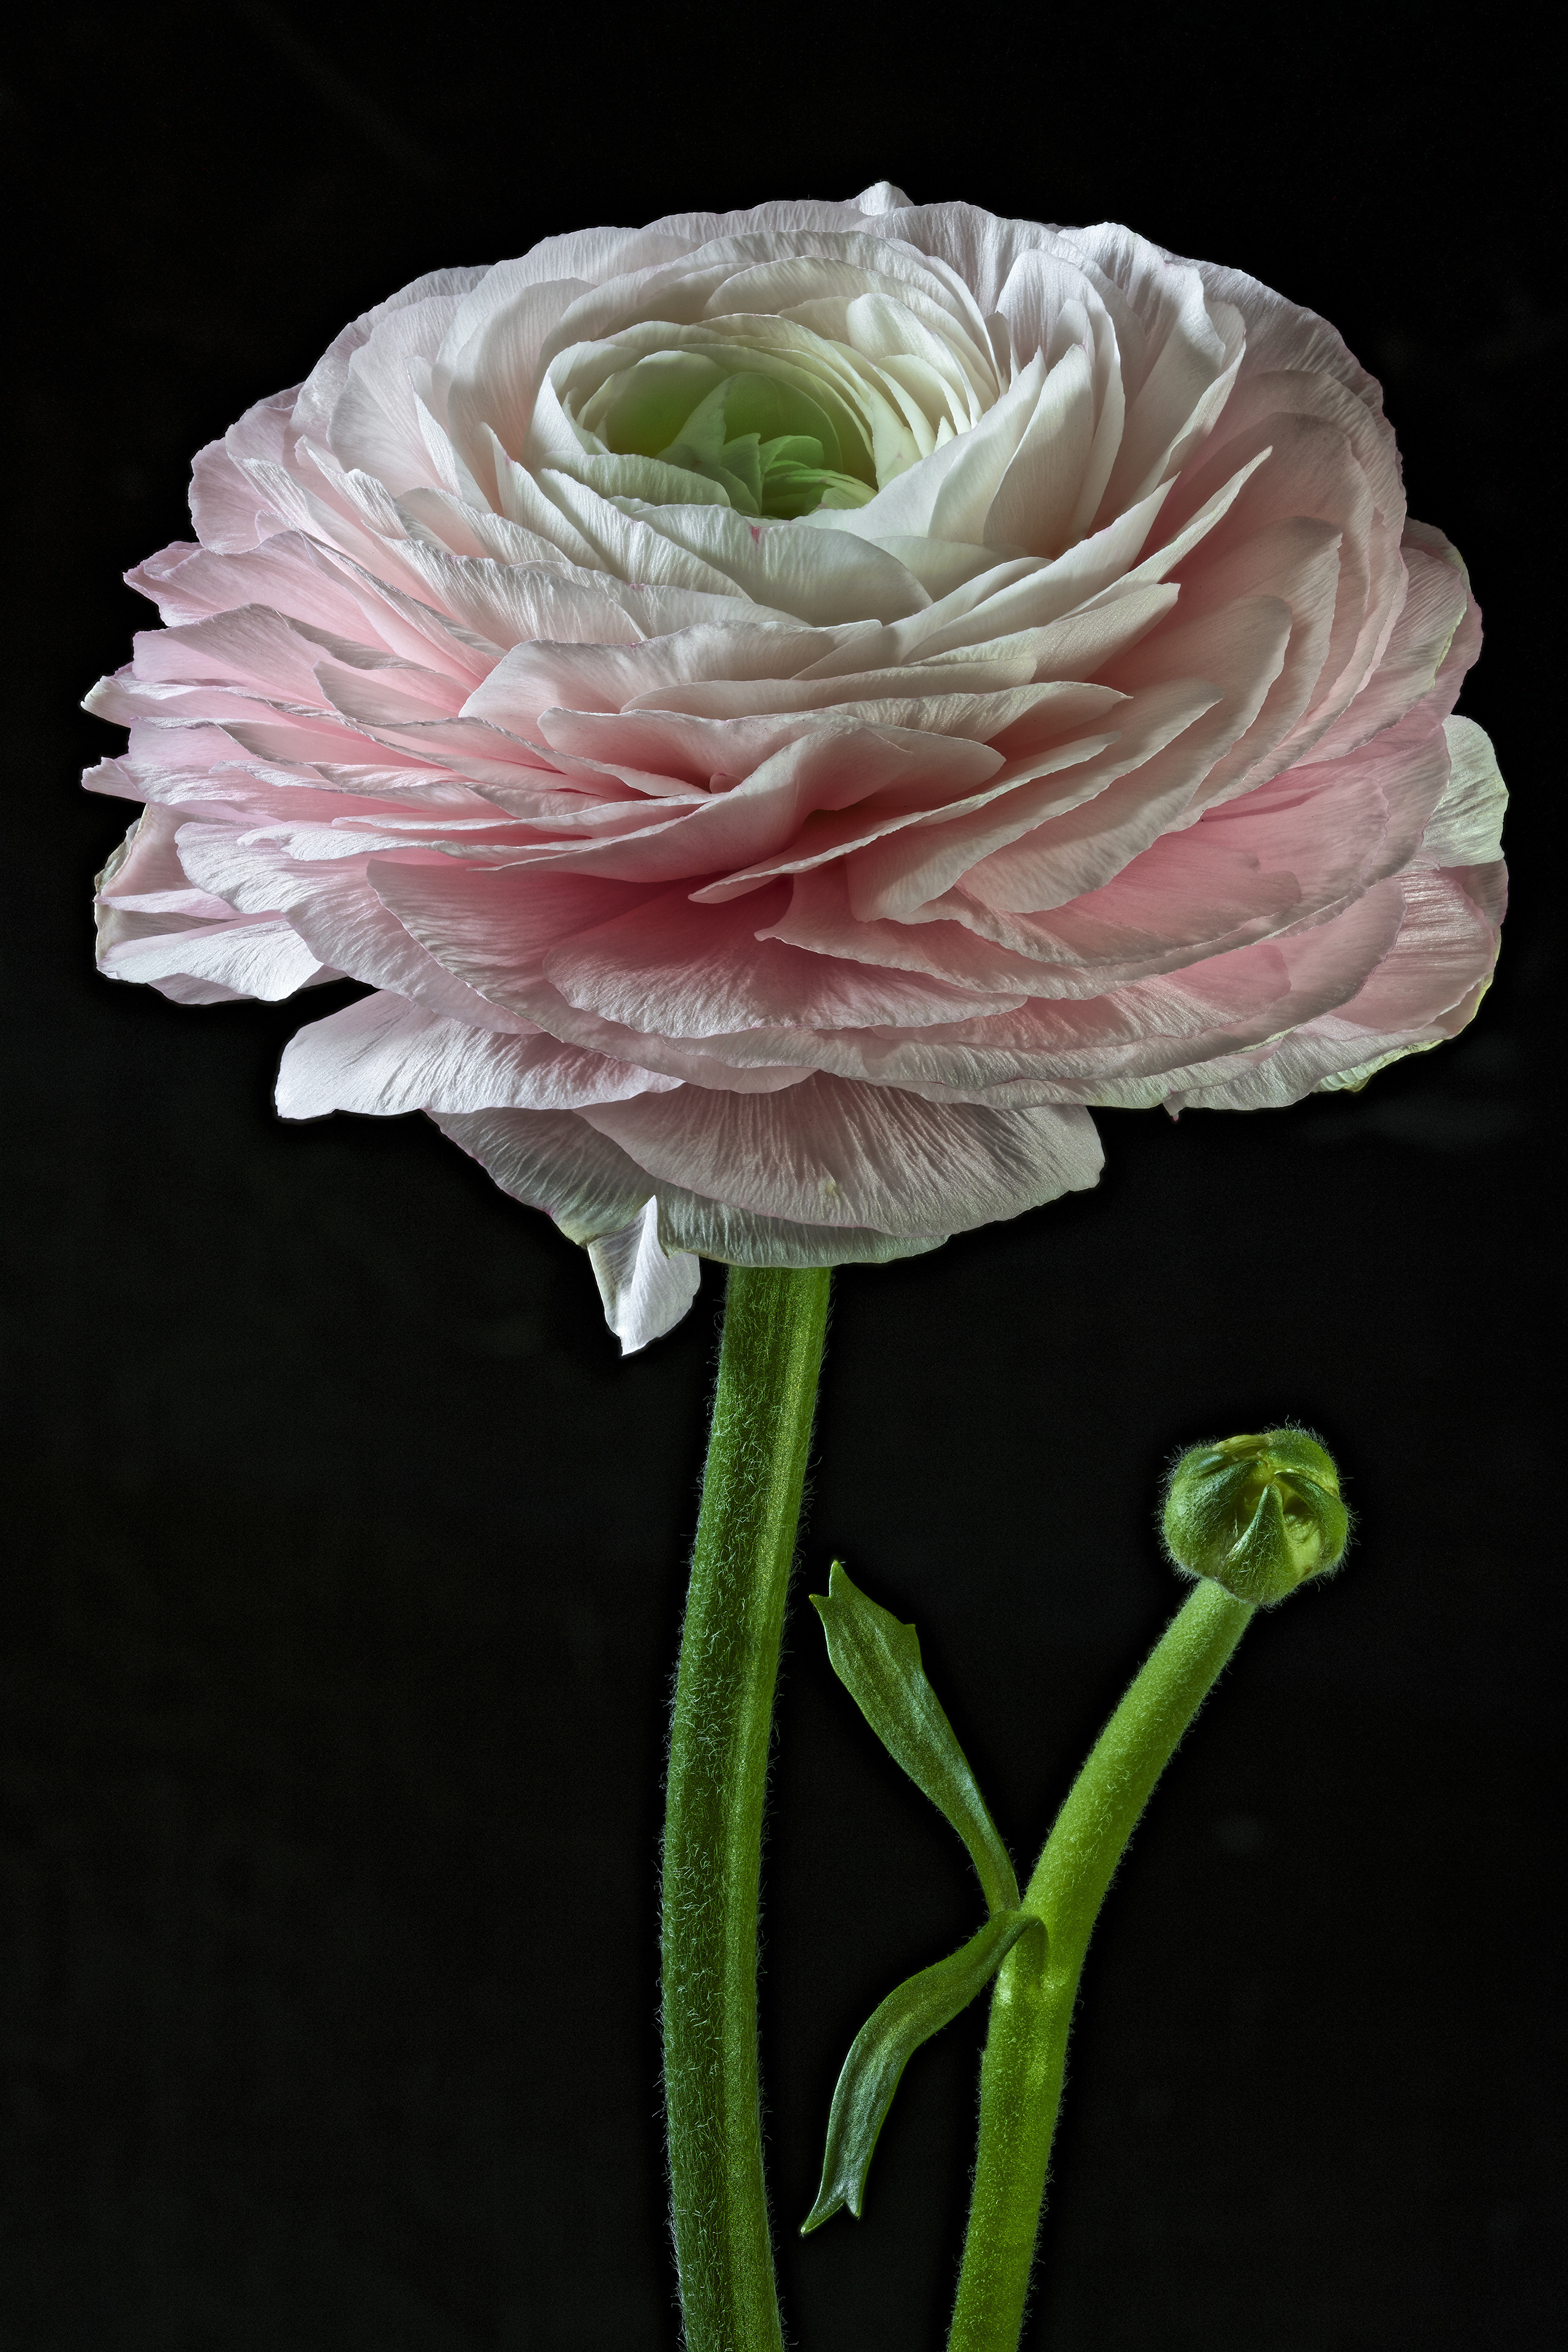 Фото цветок лютик макросъемка - бесплатные картинки на Fonwall